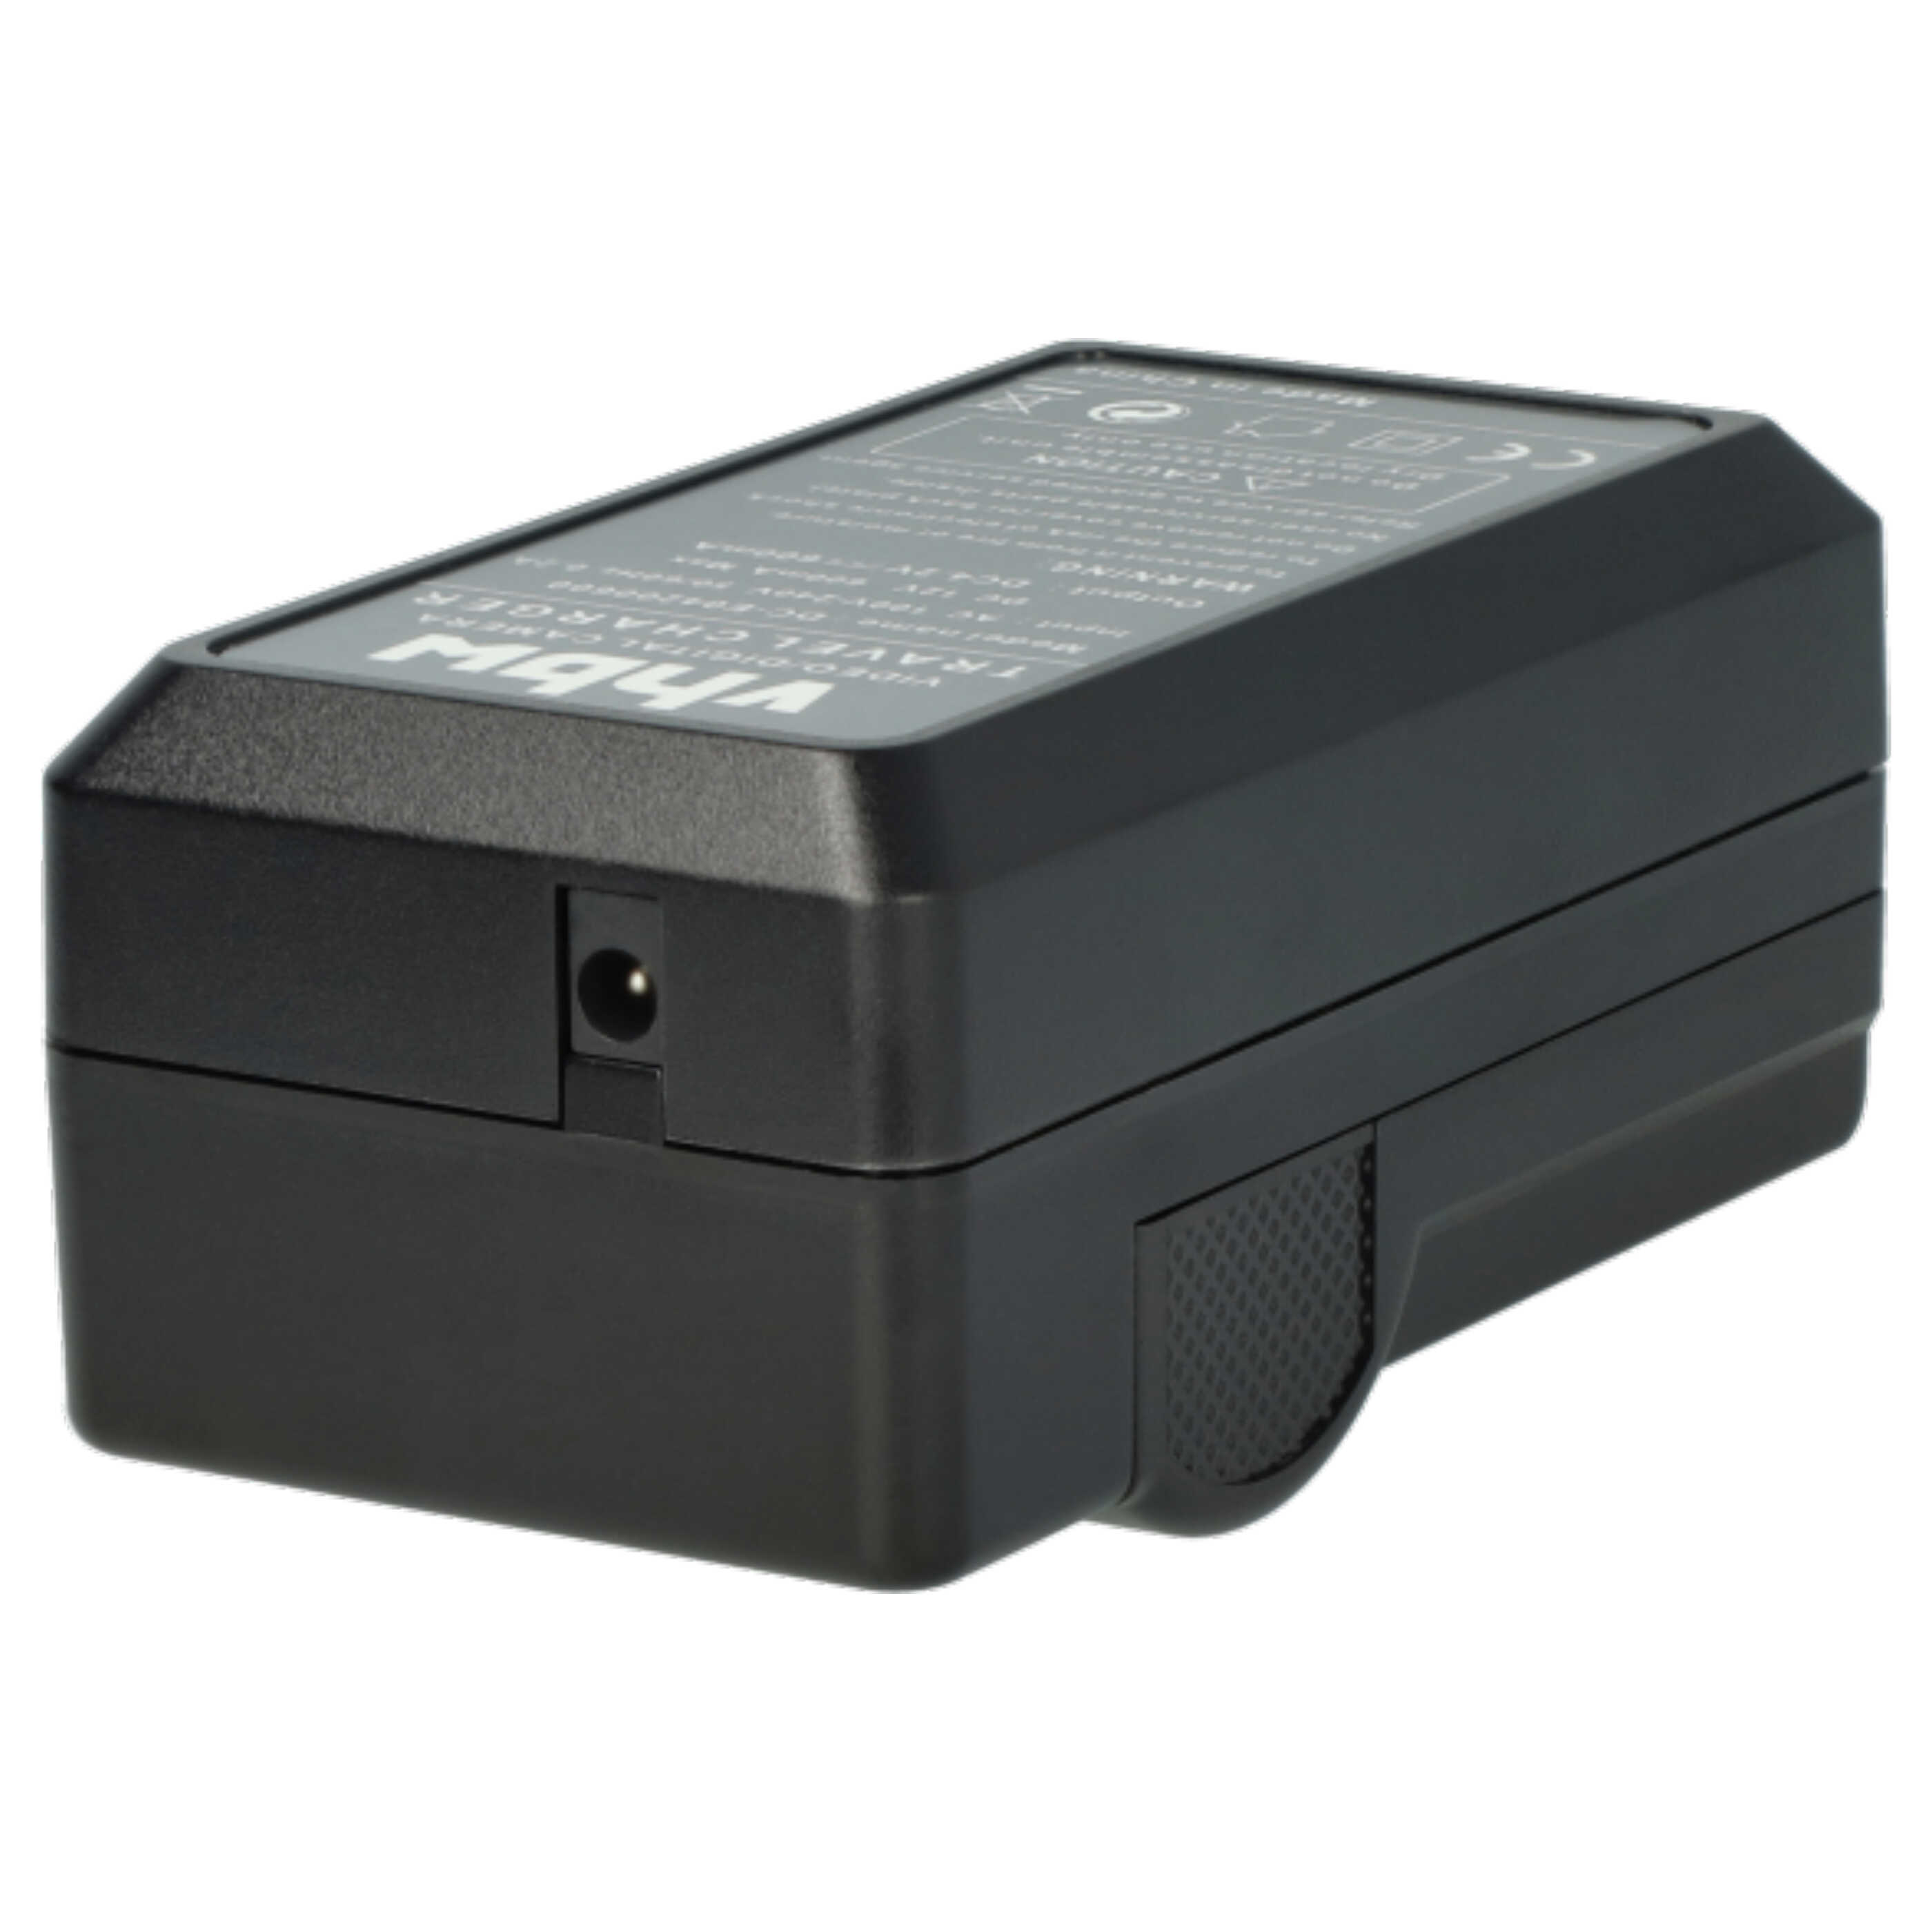 Akku Ladegerät passend für Coolpix S5100 Kamera u.a. - 0,6 A, 4,2 V